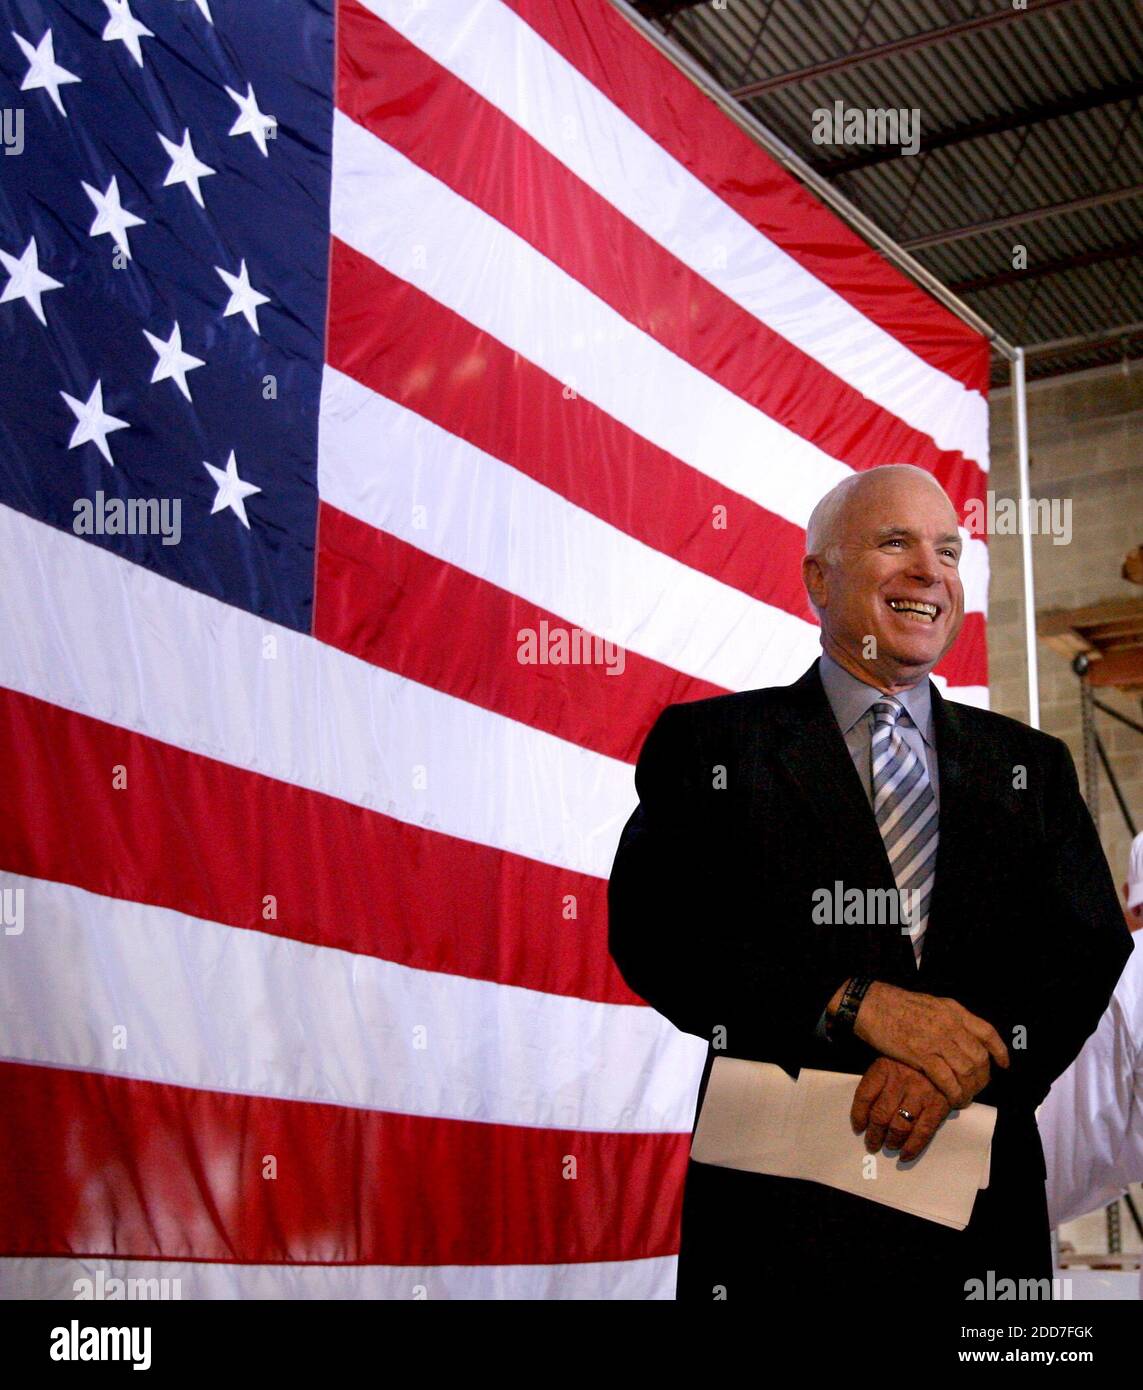 Republikanischer Präsidentschaftskandidat Senator John McCain während einer Diskussionsrunde mit der Gemeinde, Wirtschaft und gewählten Führern bei Baker Manufacturing in Orlando, FL, USA am 23. Januar 2008. Foto von Joe Burbank/Orlando Sentinel/MCT/ABACAPRESS.COM Stockfoto